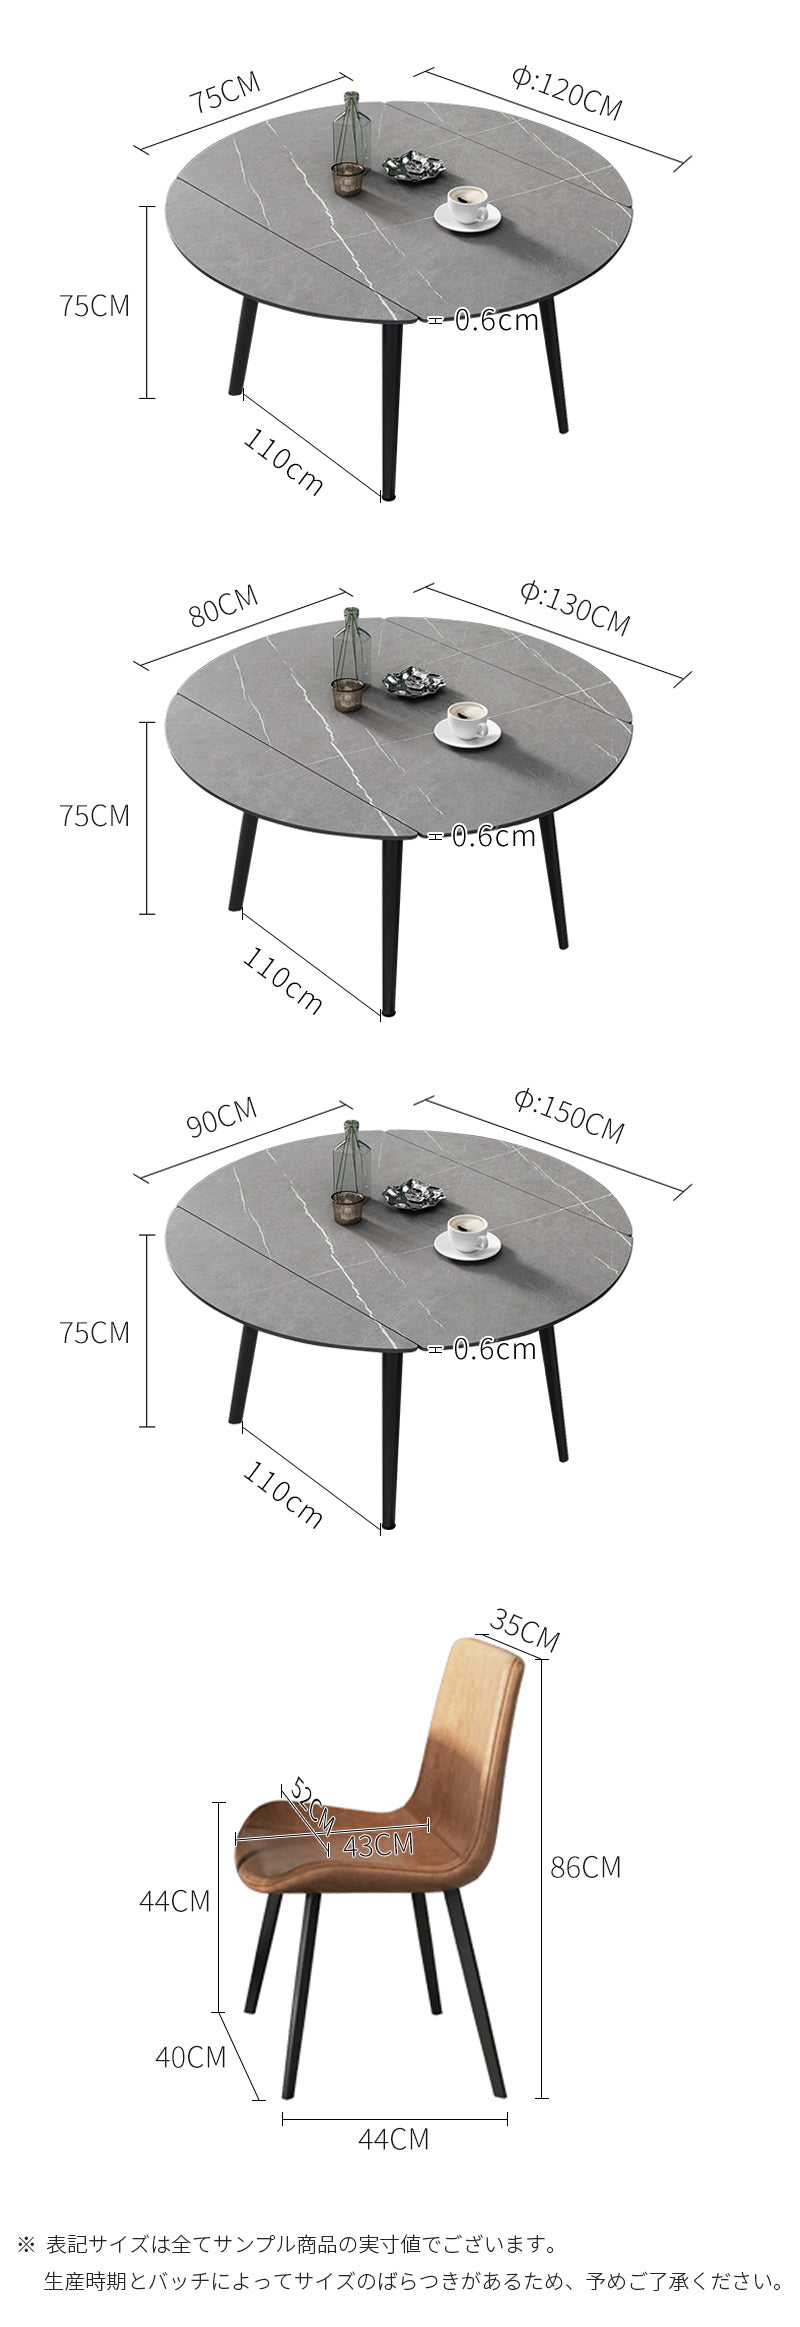 【ダイニングテーブル】北欧  伸縮式 選べる4色 商品のサイズ画像